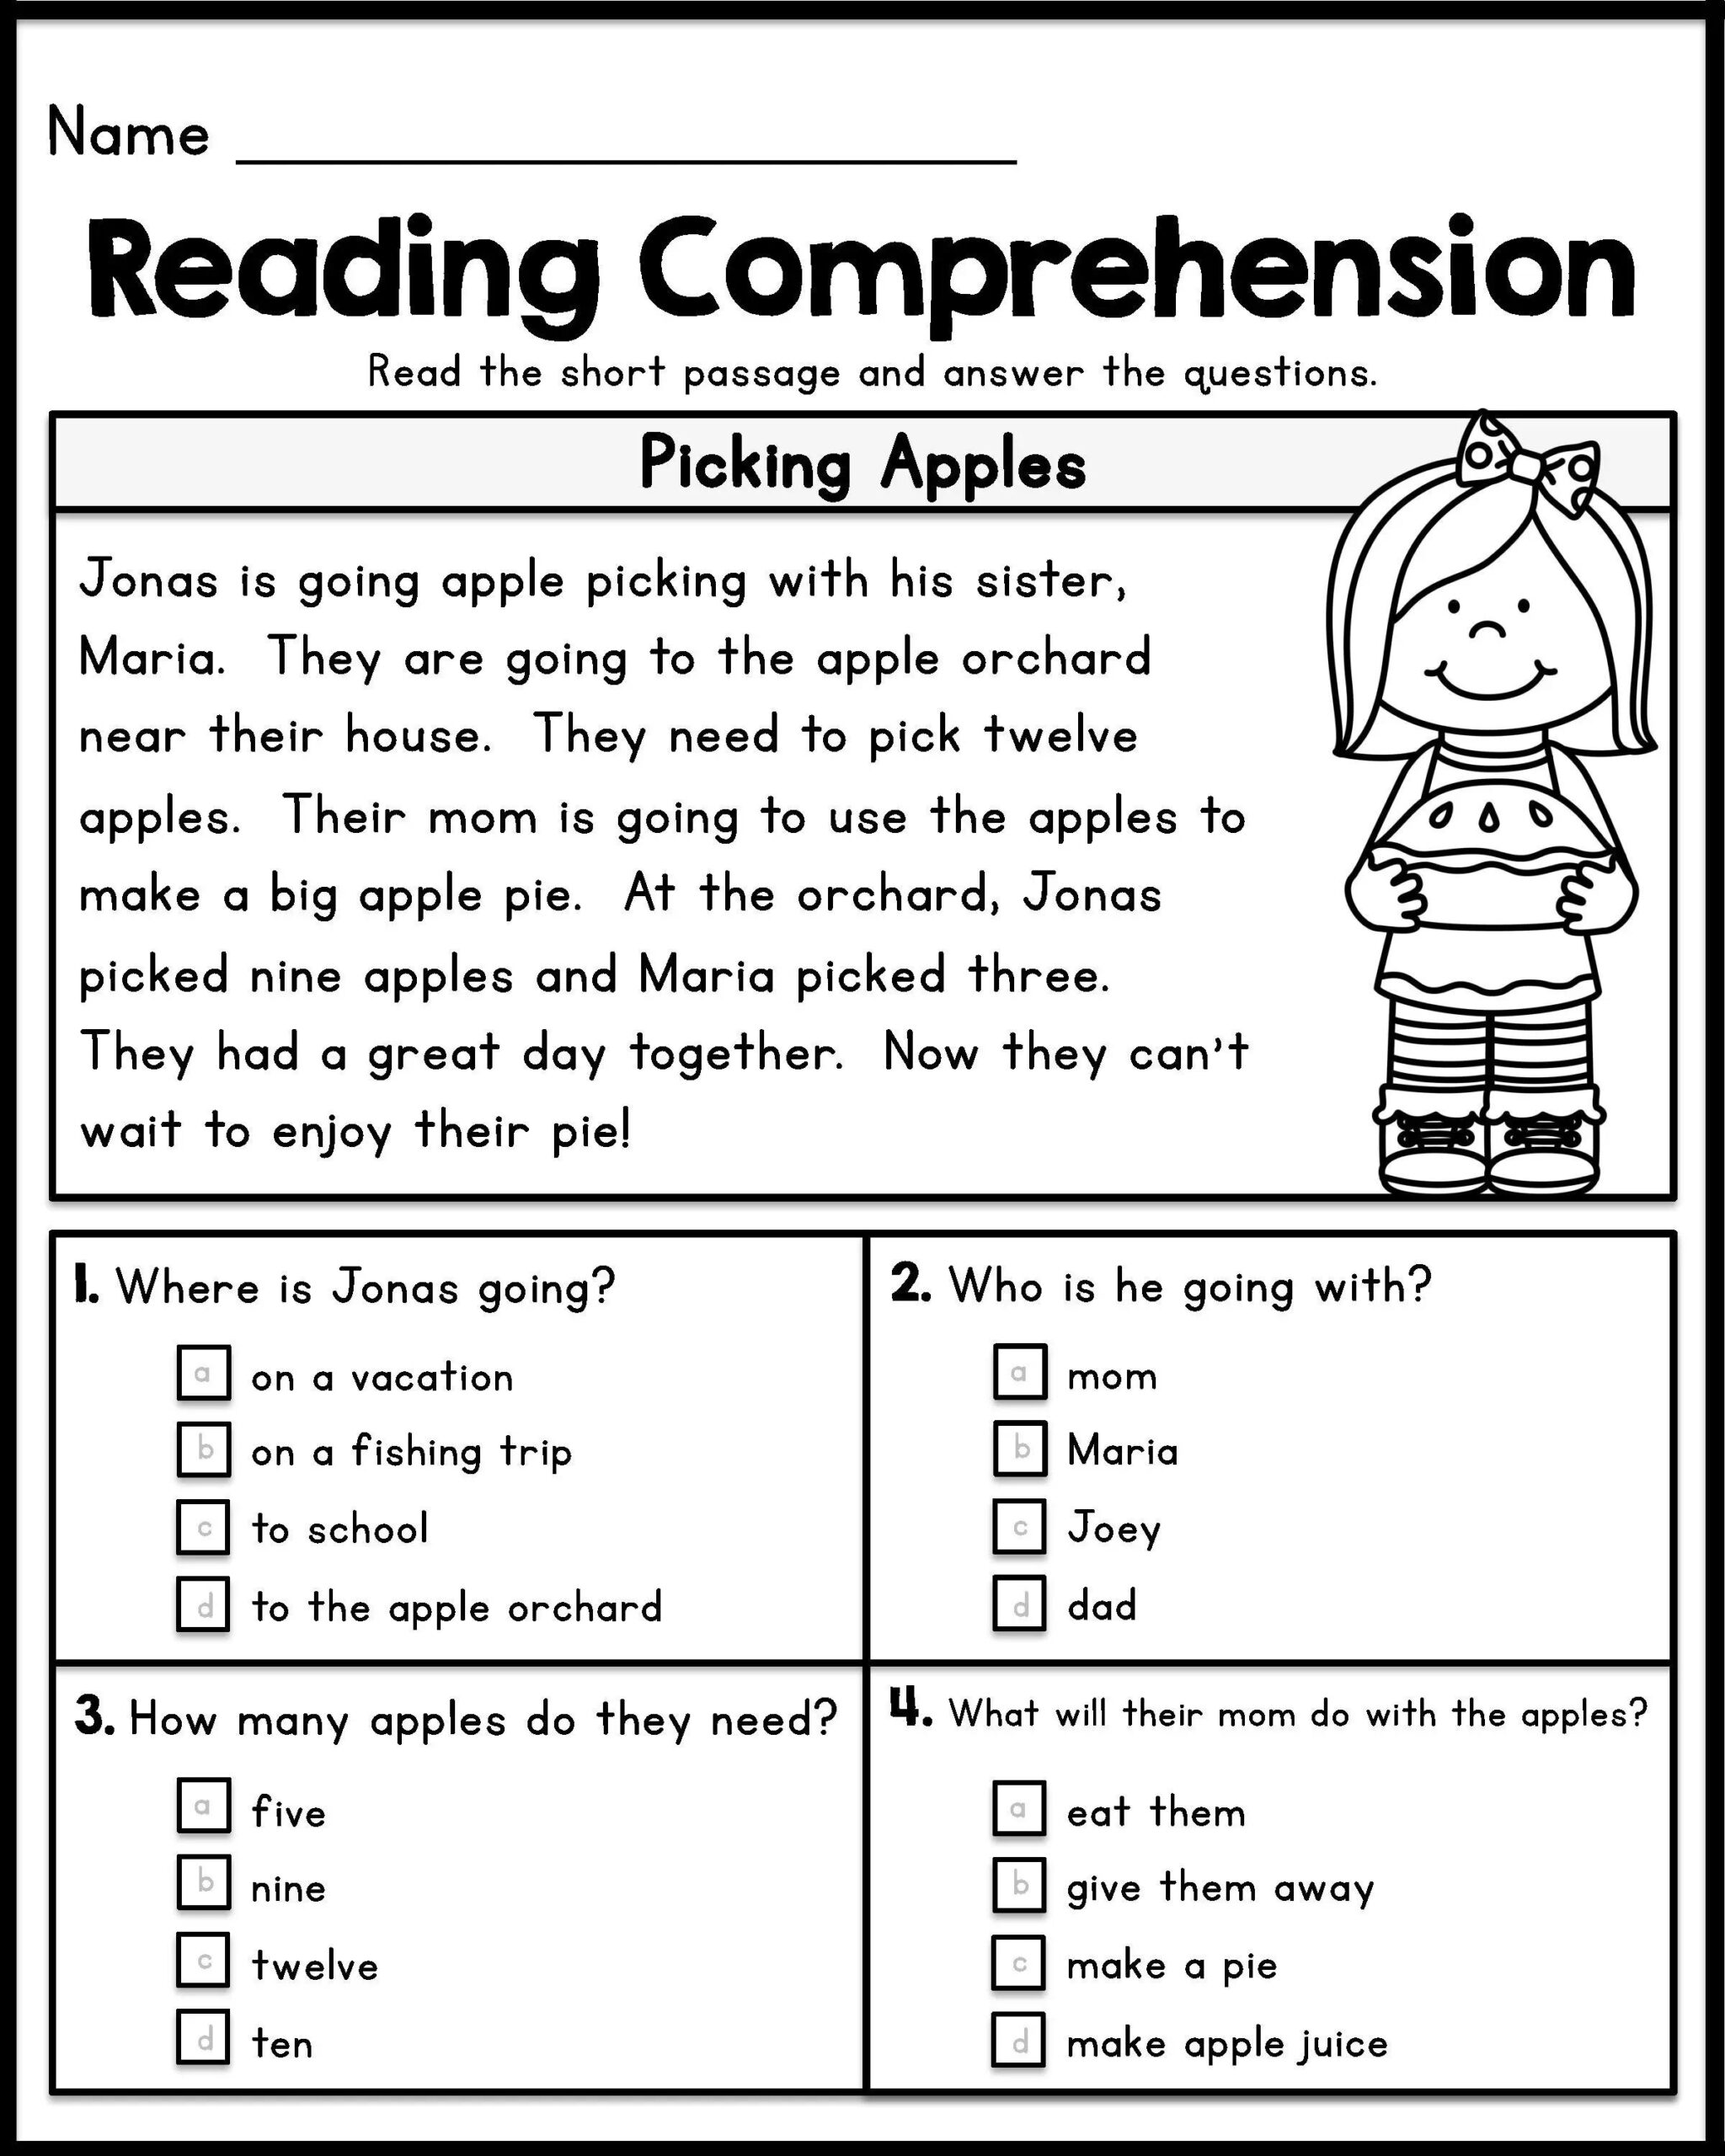 reading-comprehension-worksheets-for-1st-grade-reading-comprehension